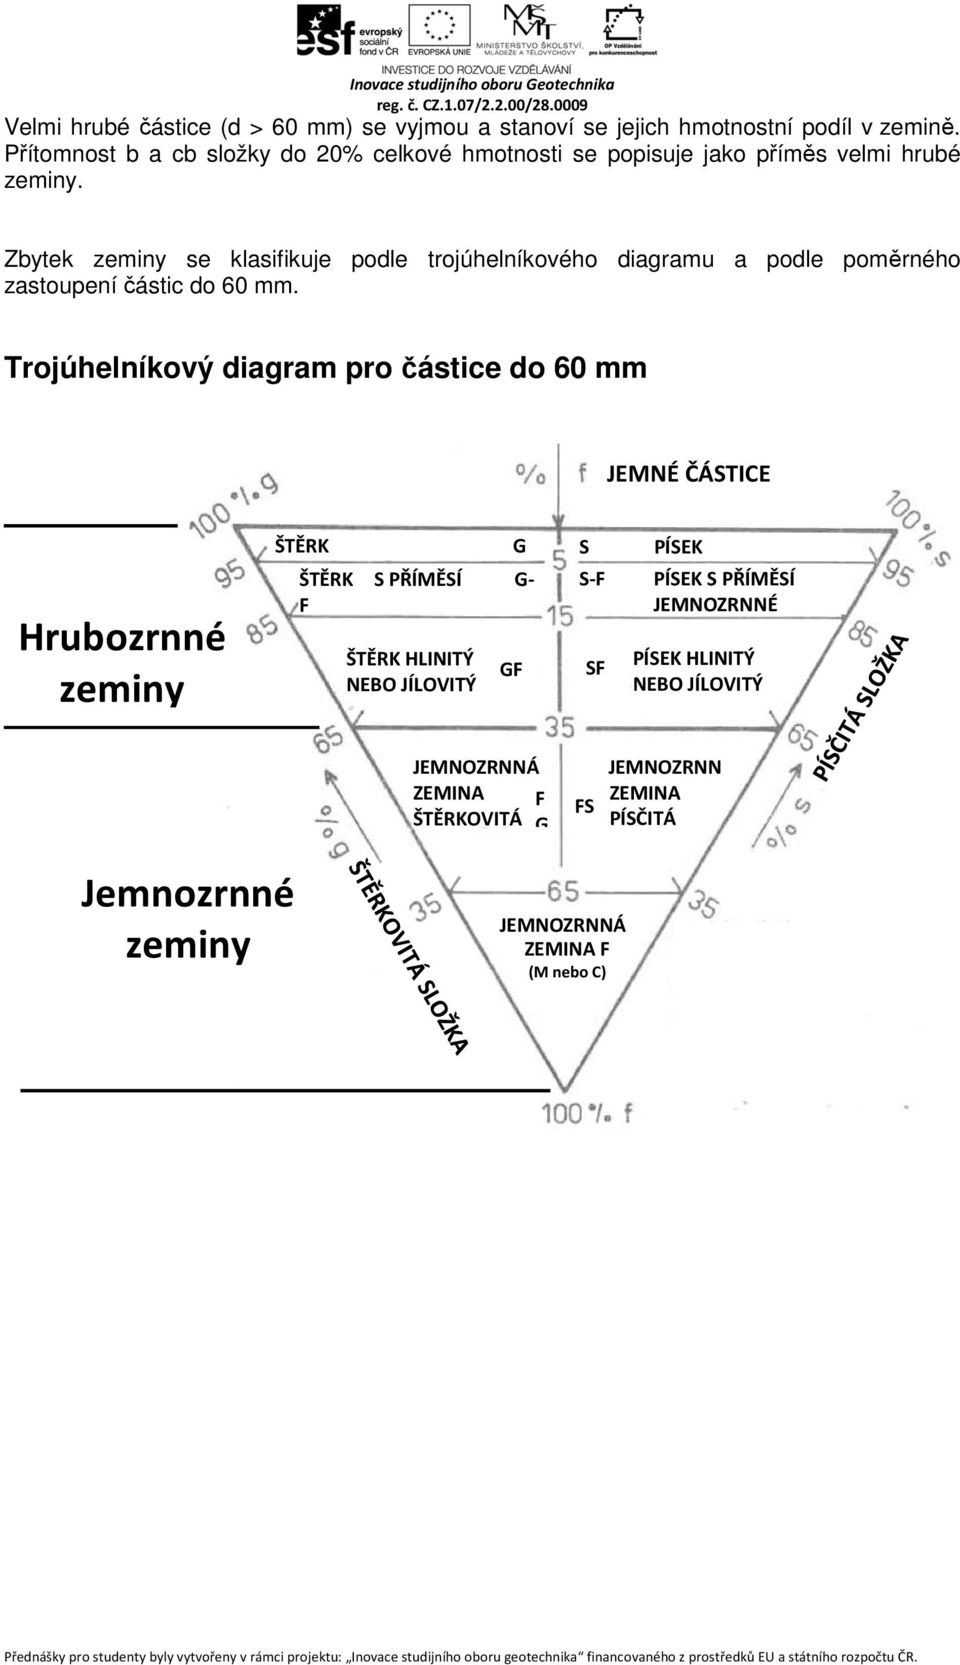 Zbytek zeminy se klasifikuje podle trojúhelníkového diagramu a podle poměrného zastoupení částic do 60 mm.